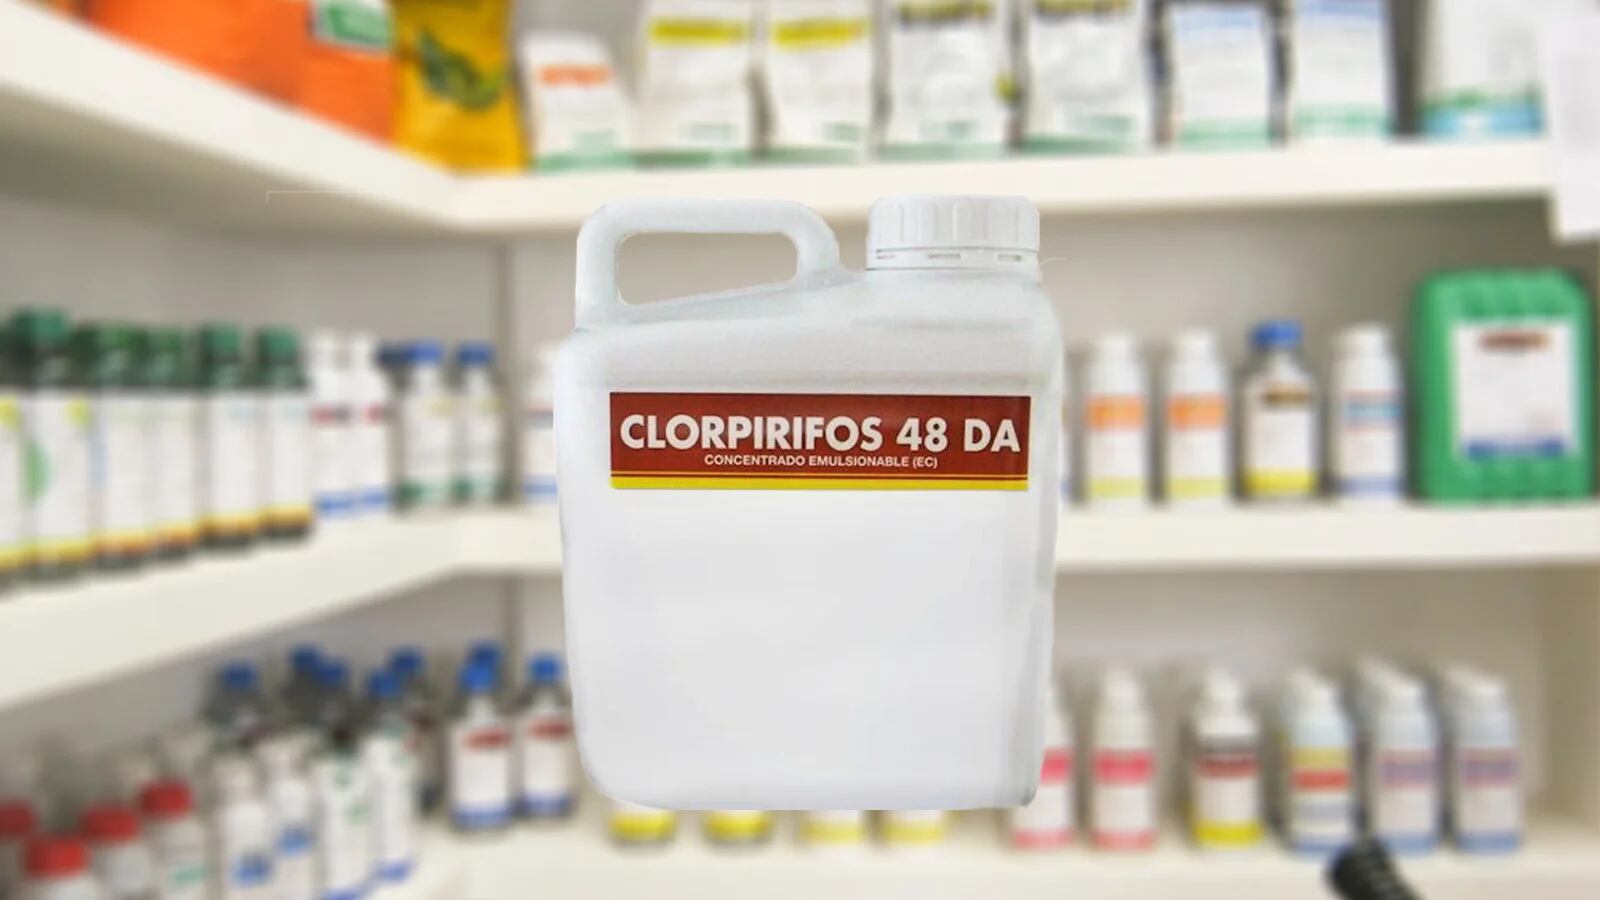 En la Argentina, en junio pasado el Senasa prohibió el uso de fitosanitarios y principios activos que contengan clorpirifos etil y metil